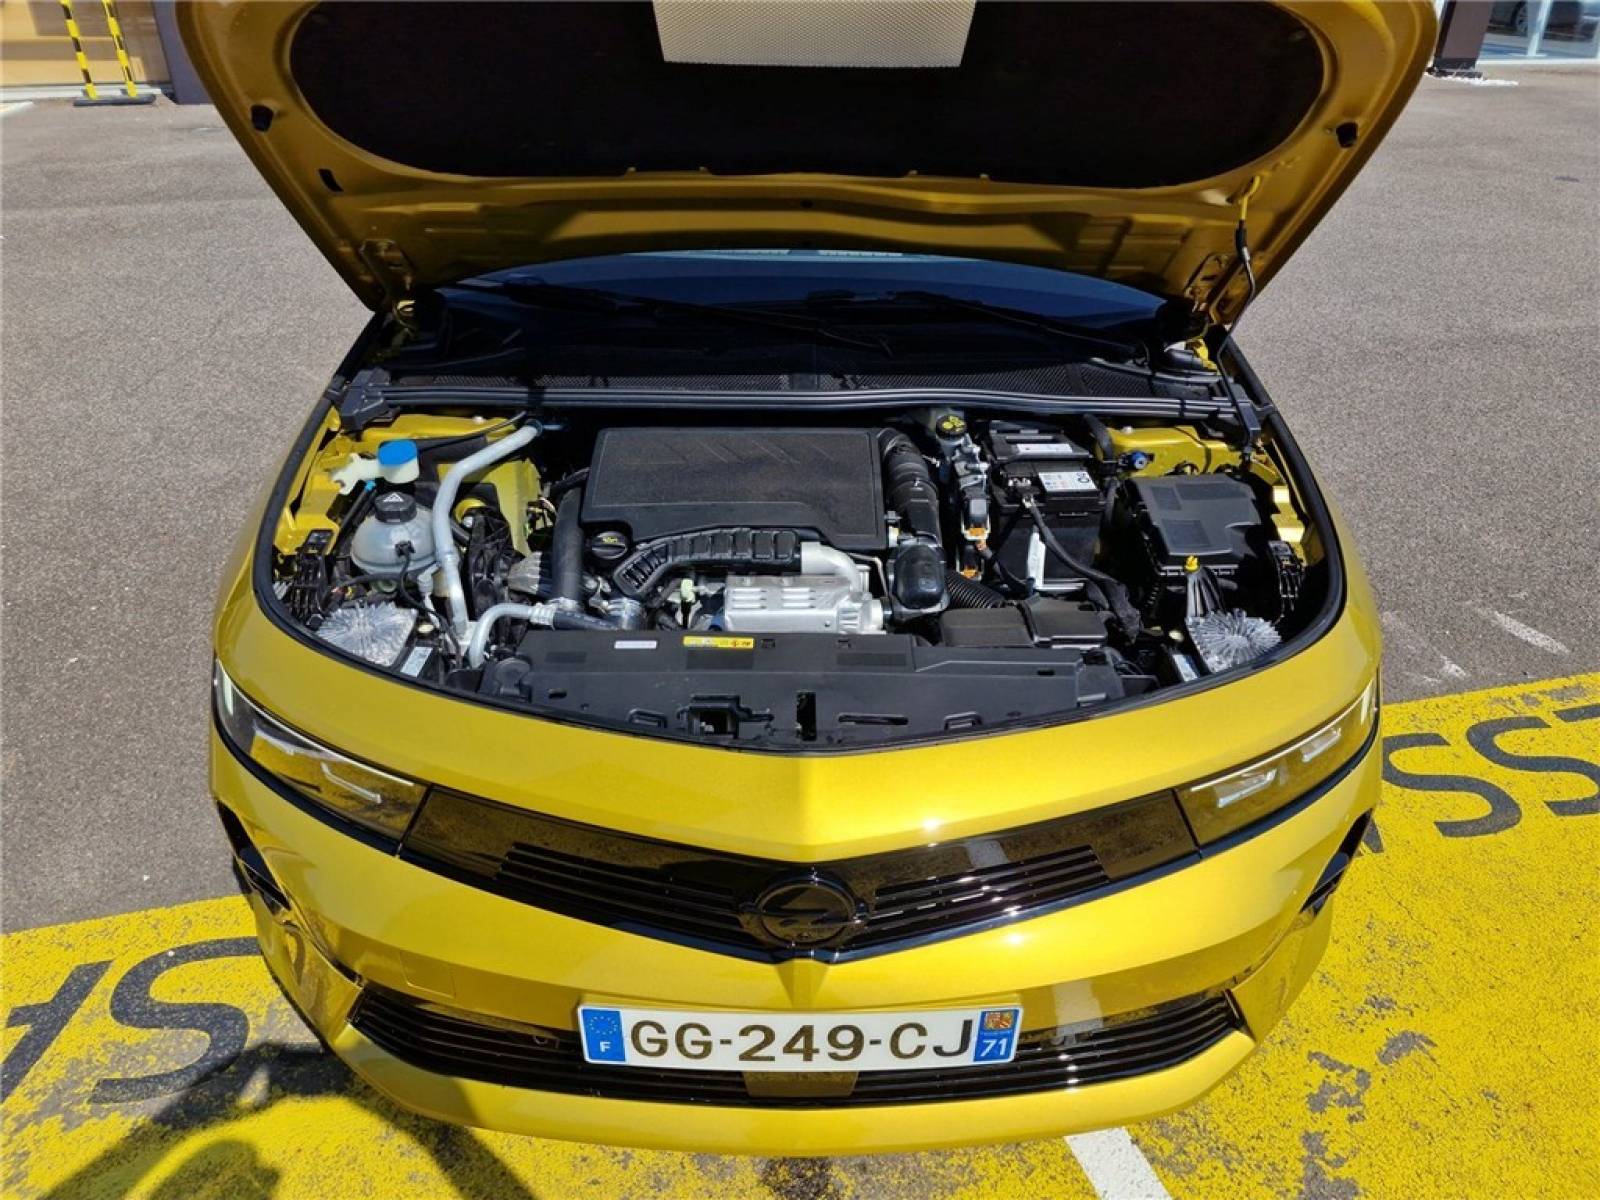 OPEL Astra 1.2 Turbo 130 ch BVA8 - véhicule d'occasion - Groupe Guillet - Opel Magicauto - Montceau-les-Mines - 71300 - Montceau-les-Mines - 10